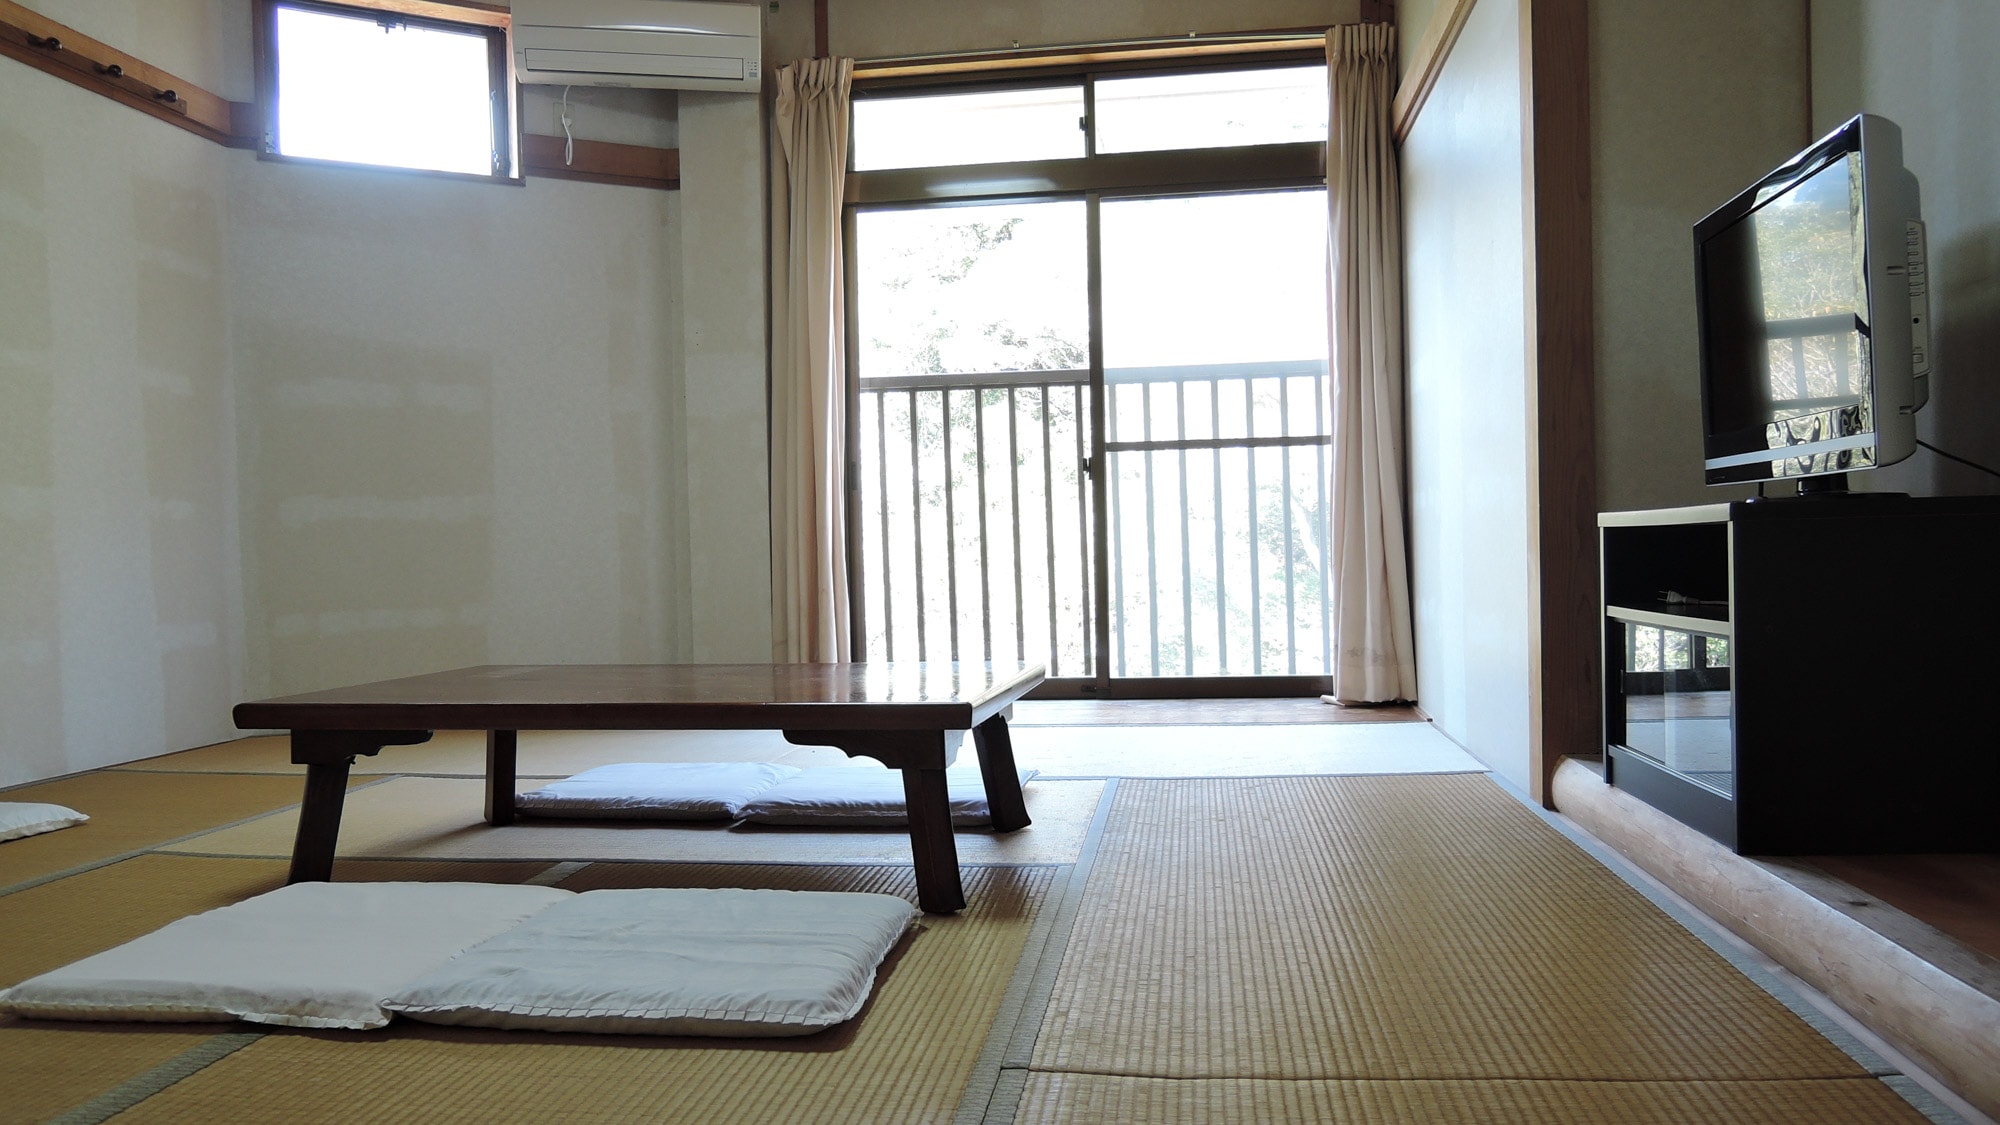 * [Kamar] Kamar bergaya Jepang 10 tikar tatami. Ini adalah gaya Jepang murni dan memiliki suasana yang tenang.